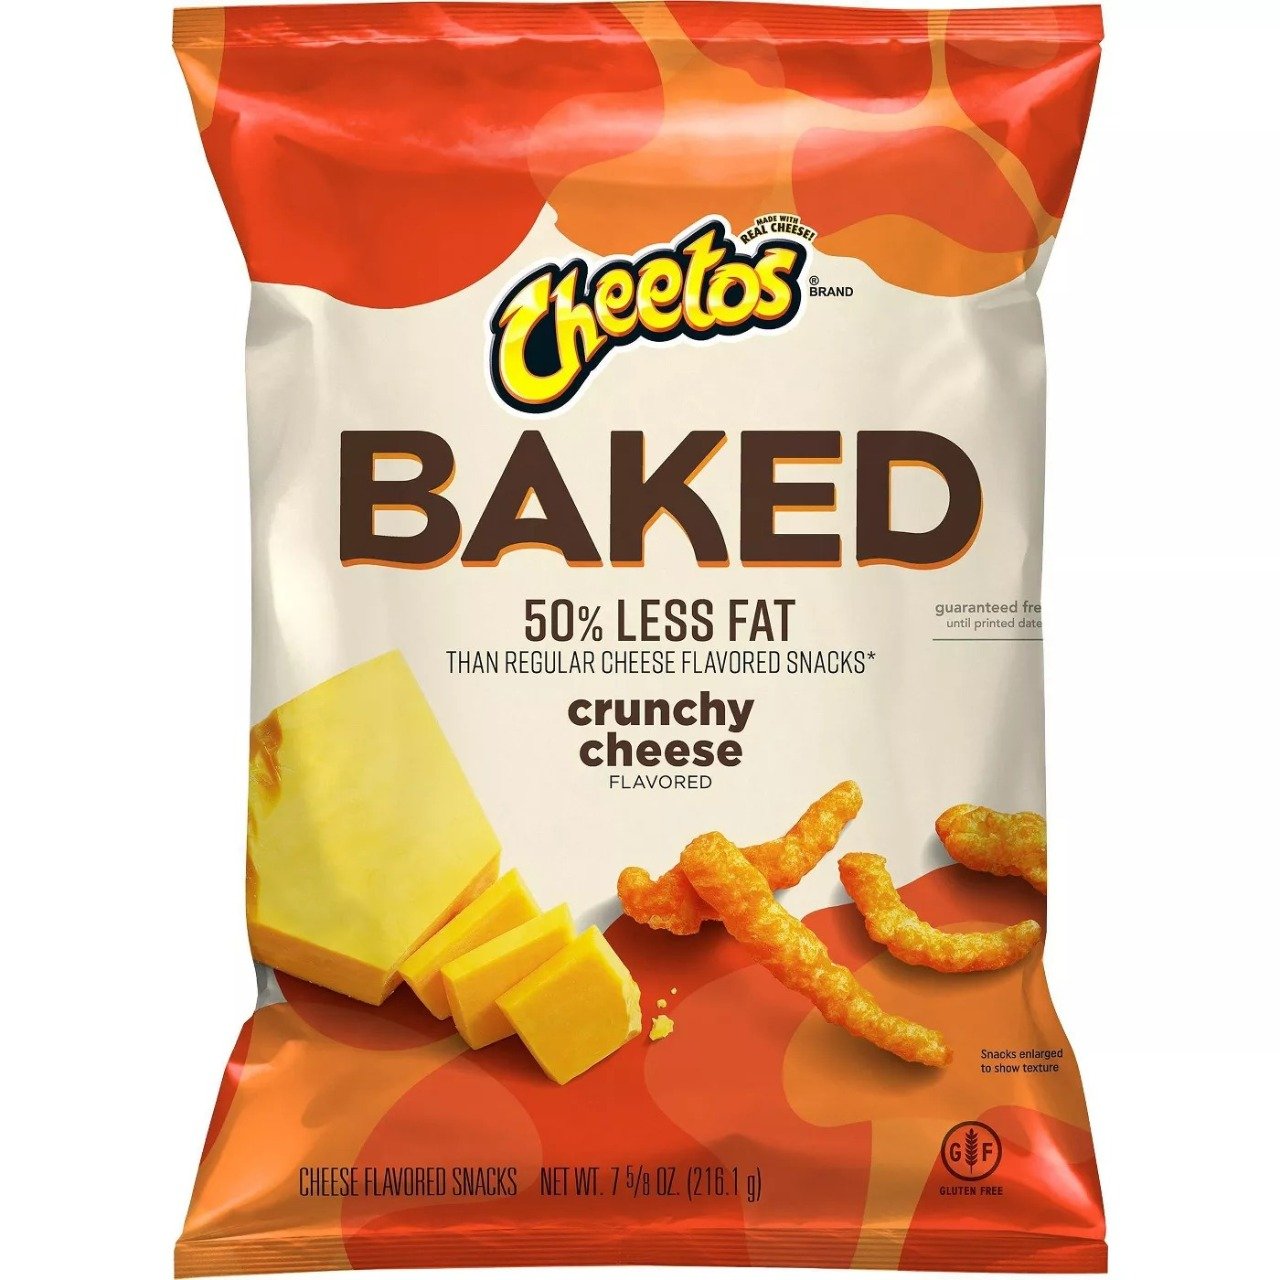 Cheetos Baked Crunchy Cheese - 50% menos grasa